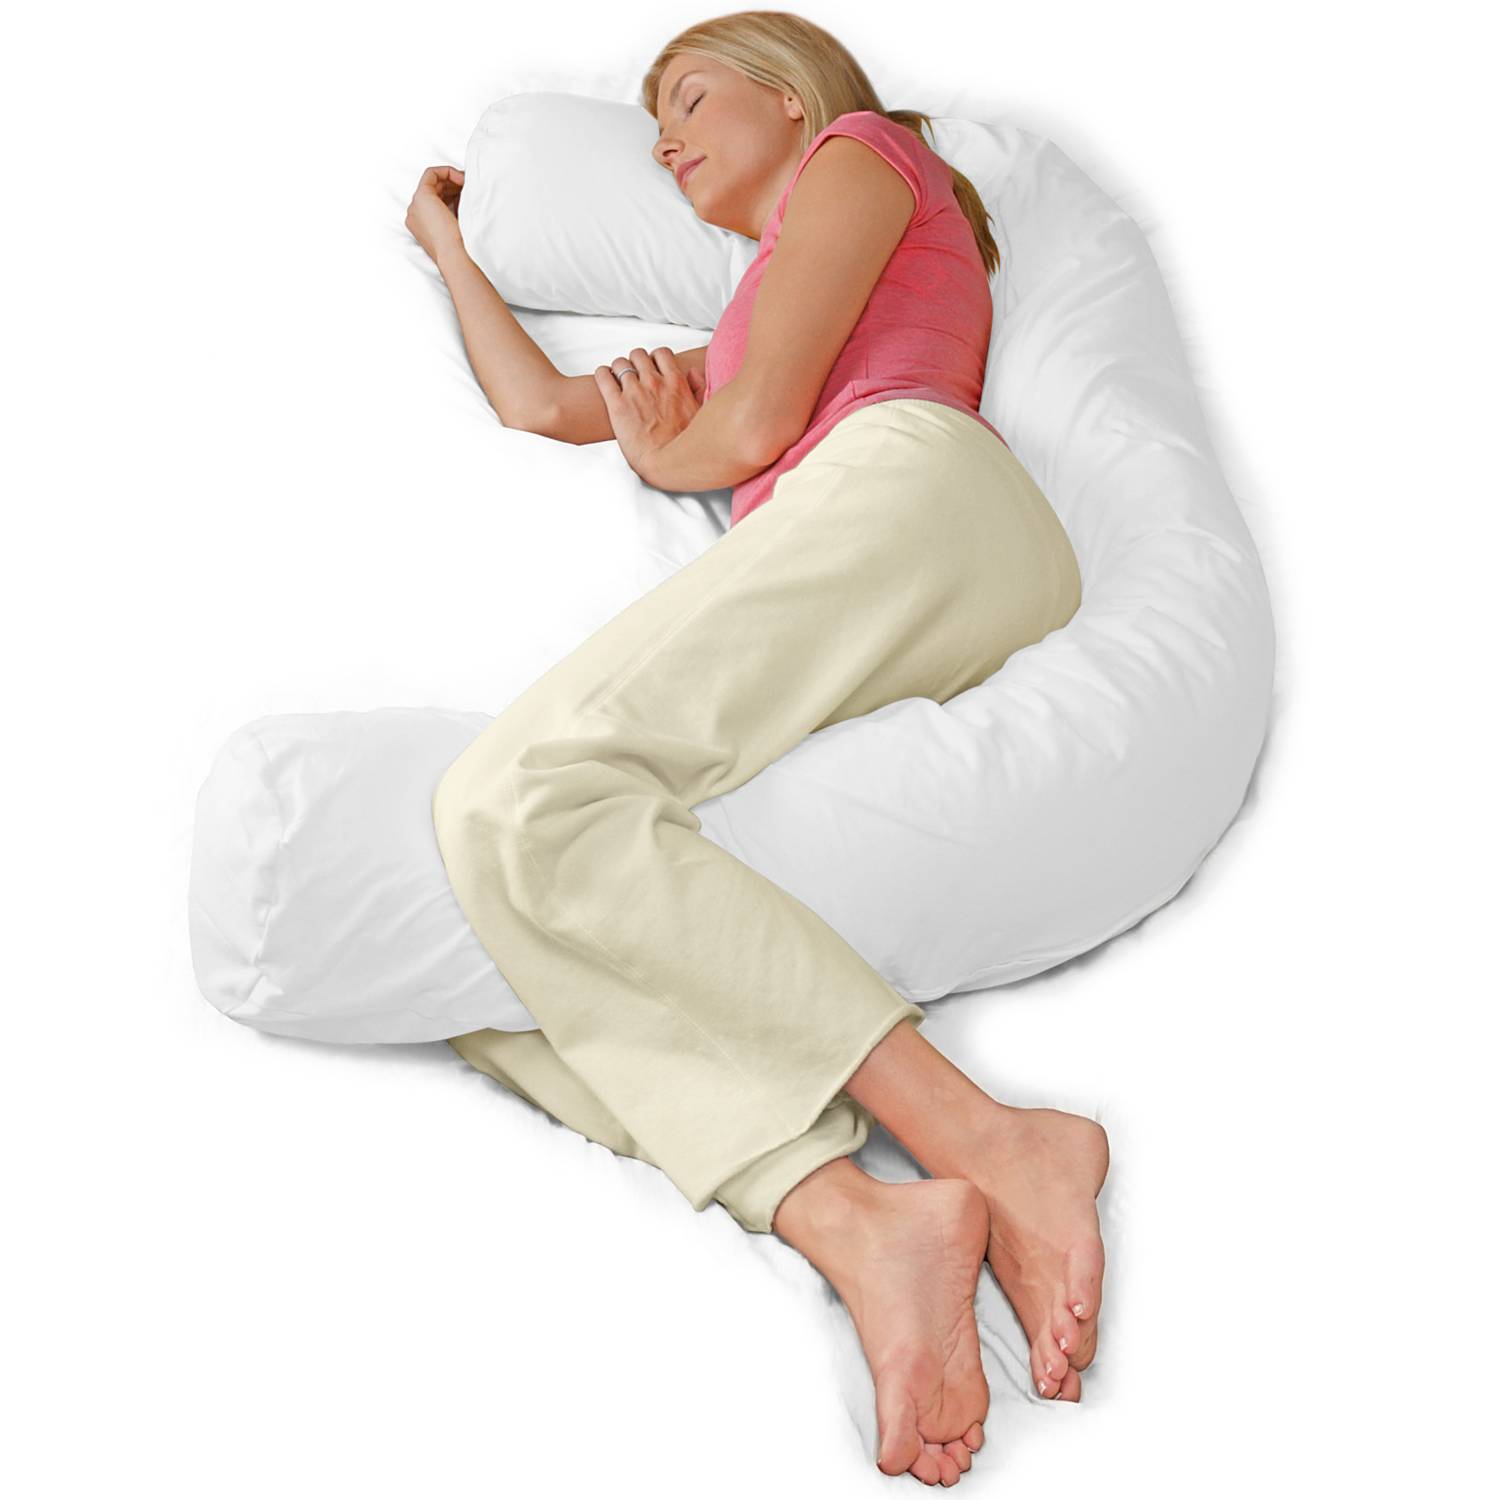 Frau liegt mit großem Kissen umschlungen im Bett